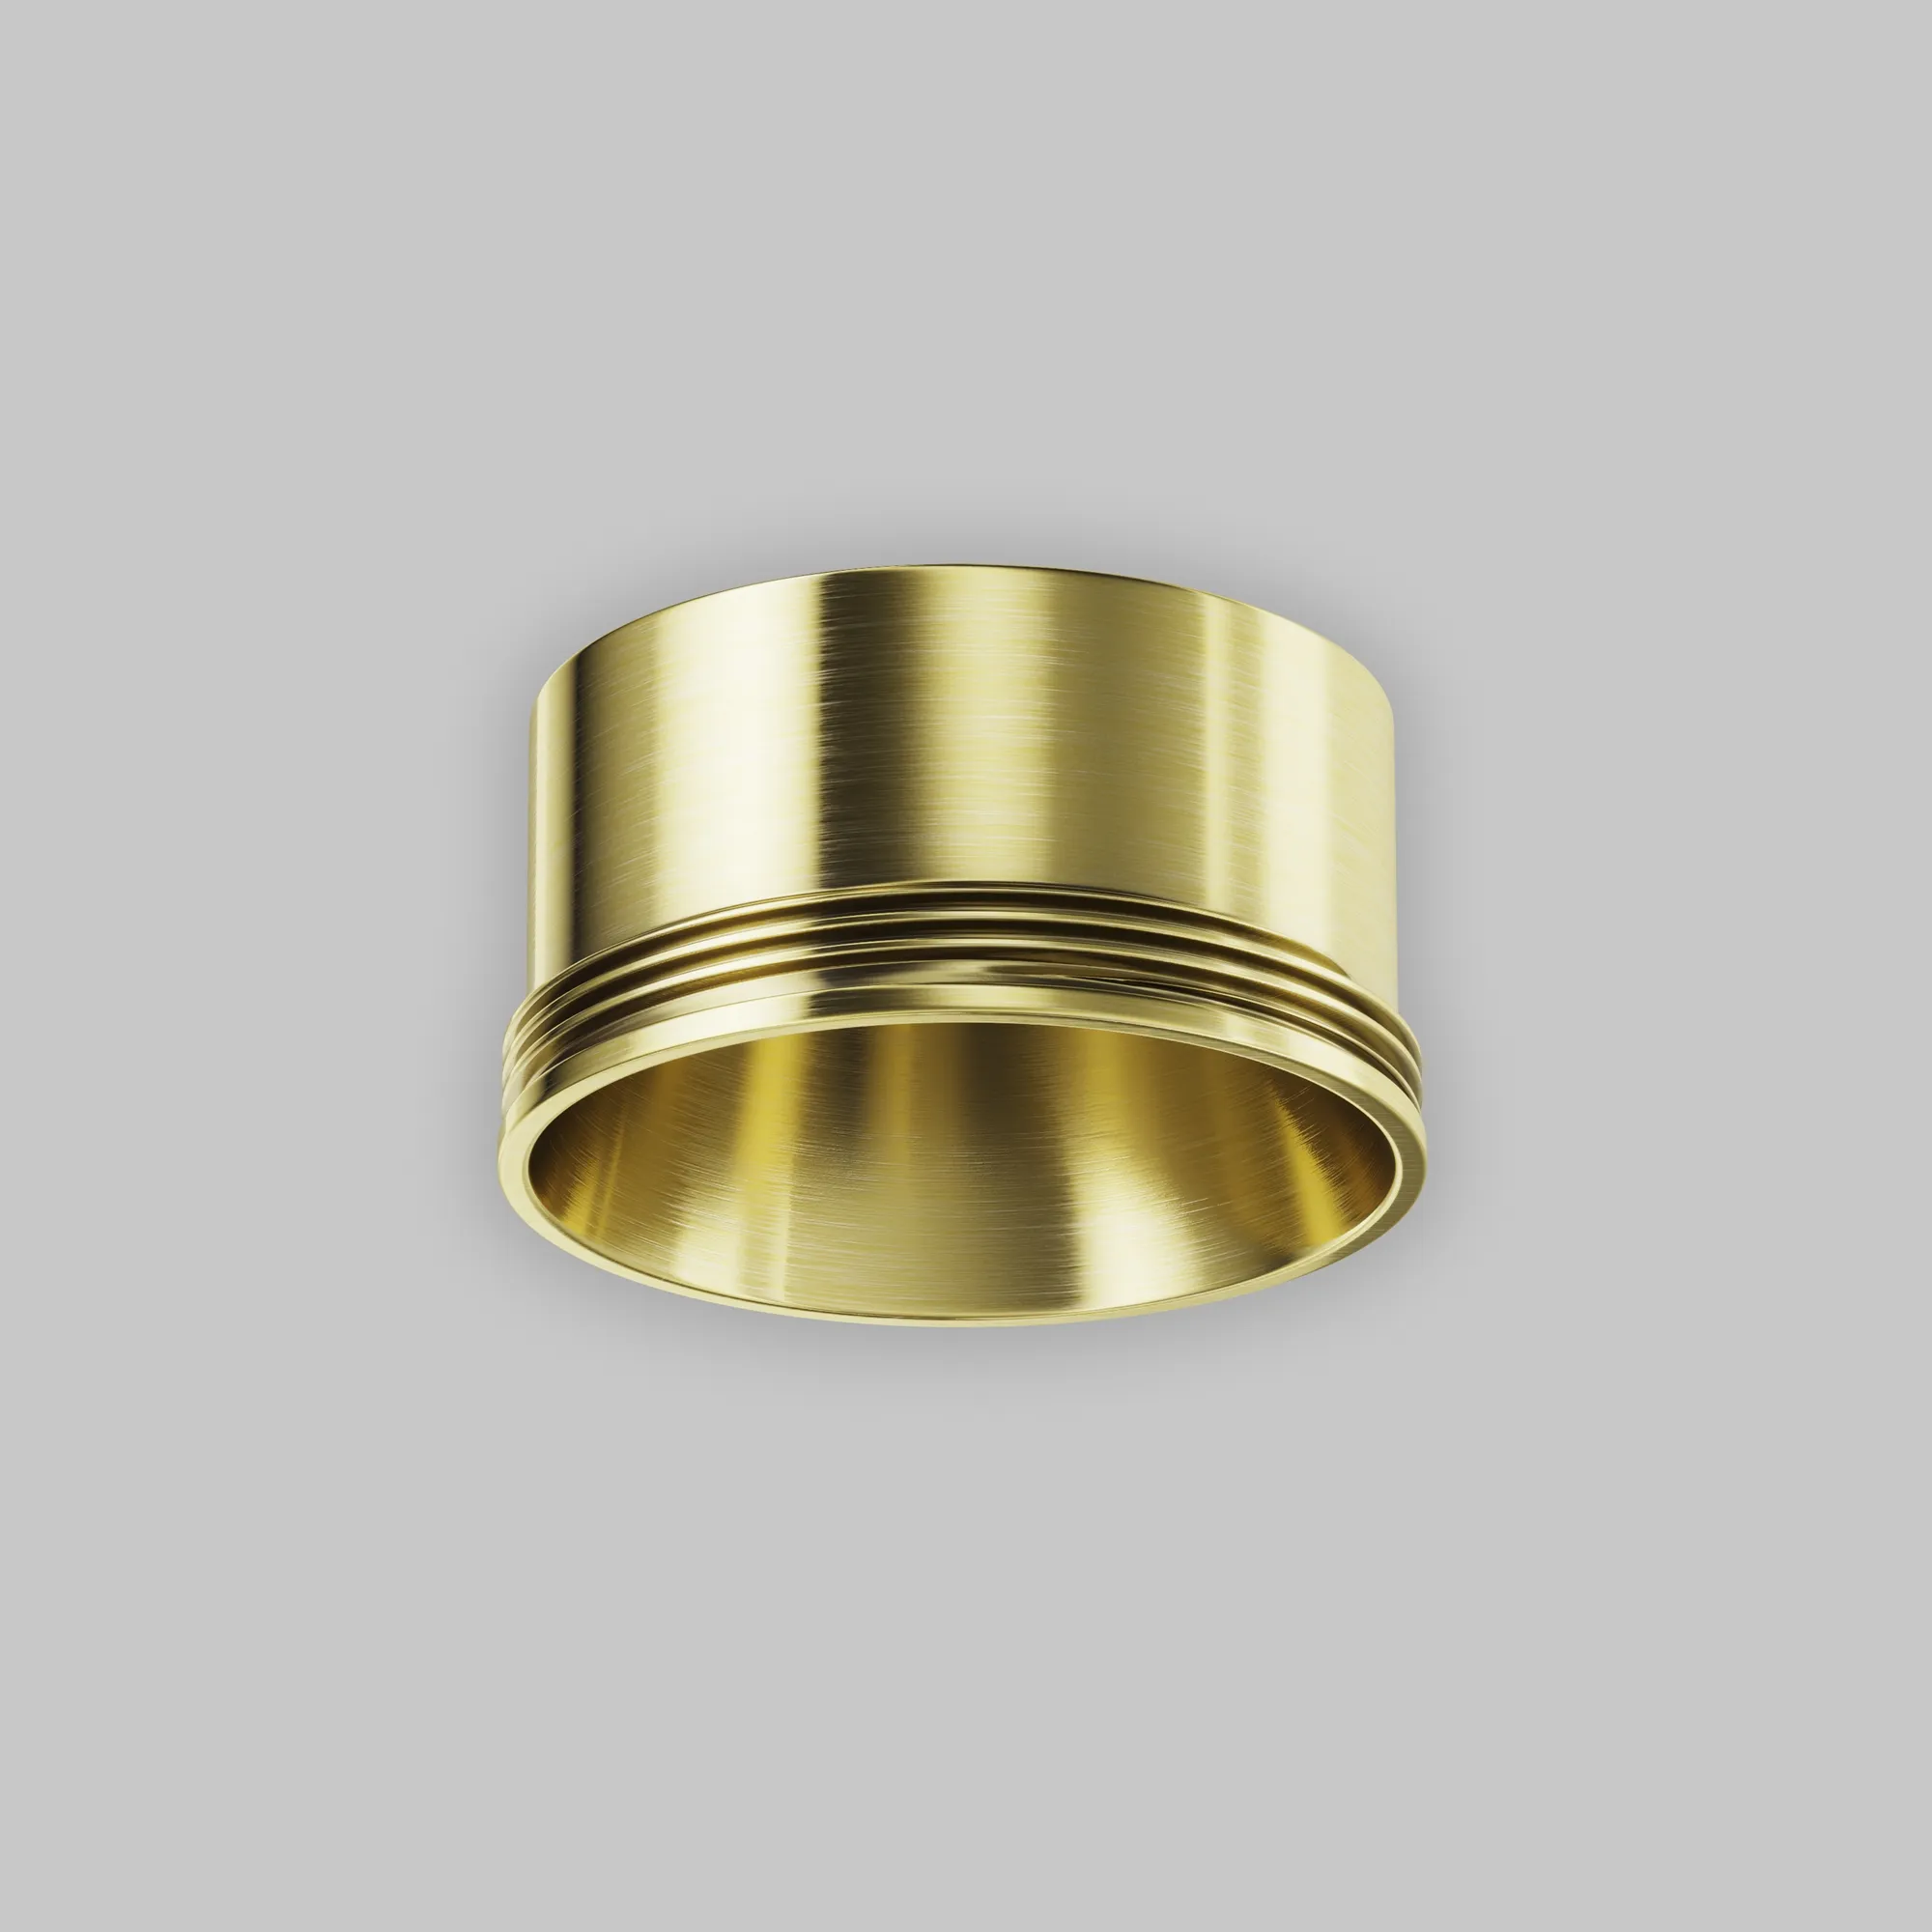 Кольцо декоративное Maytoni Focus LED RingS-5-BS